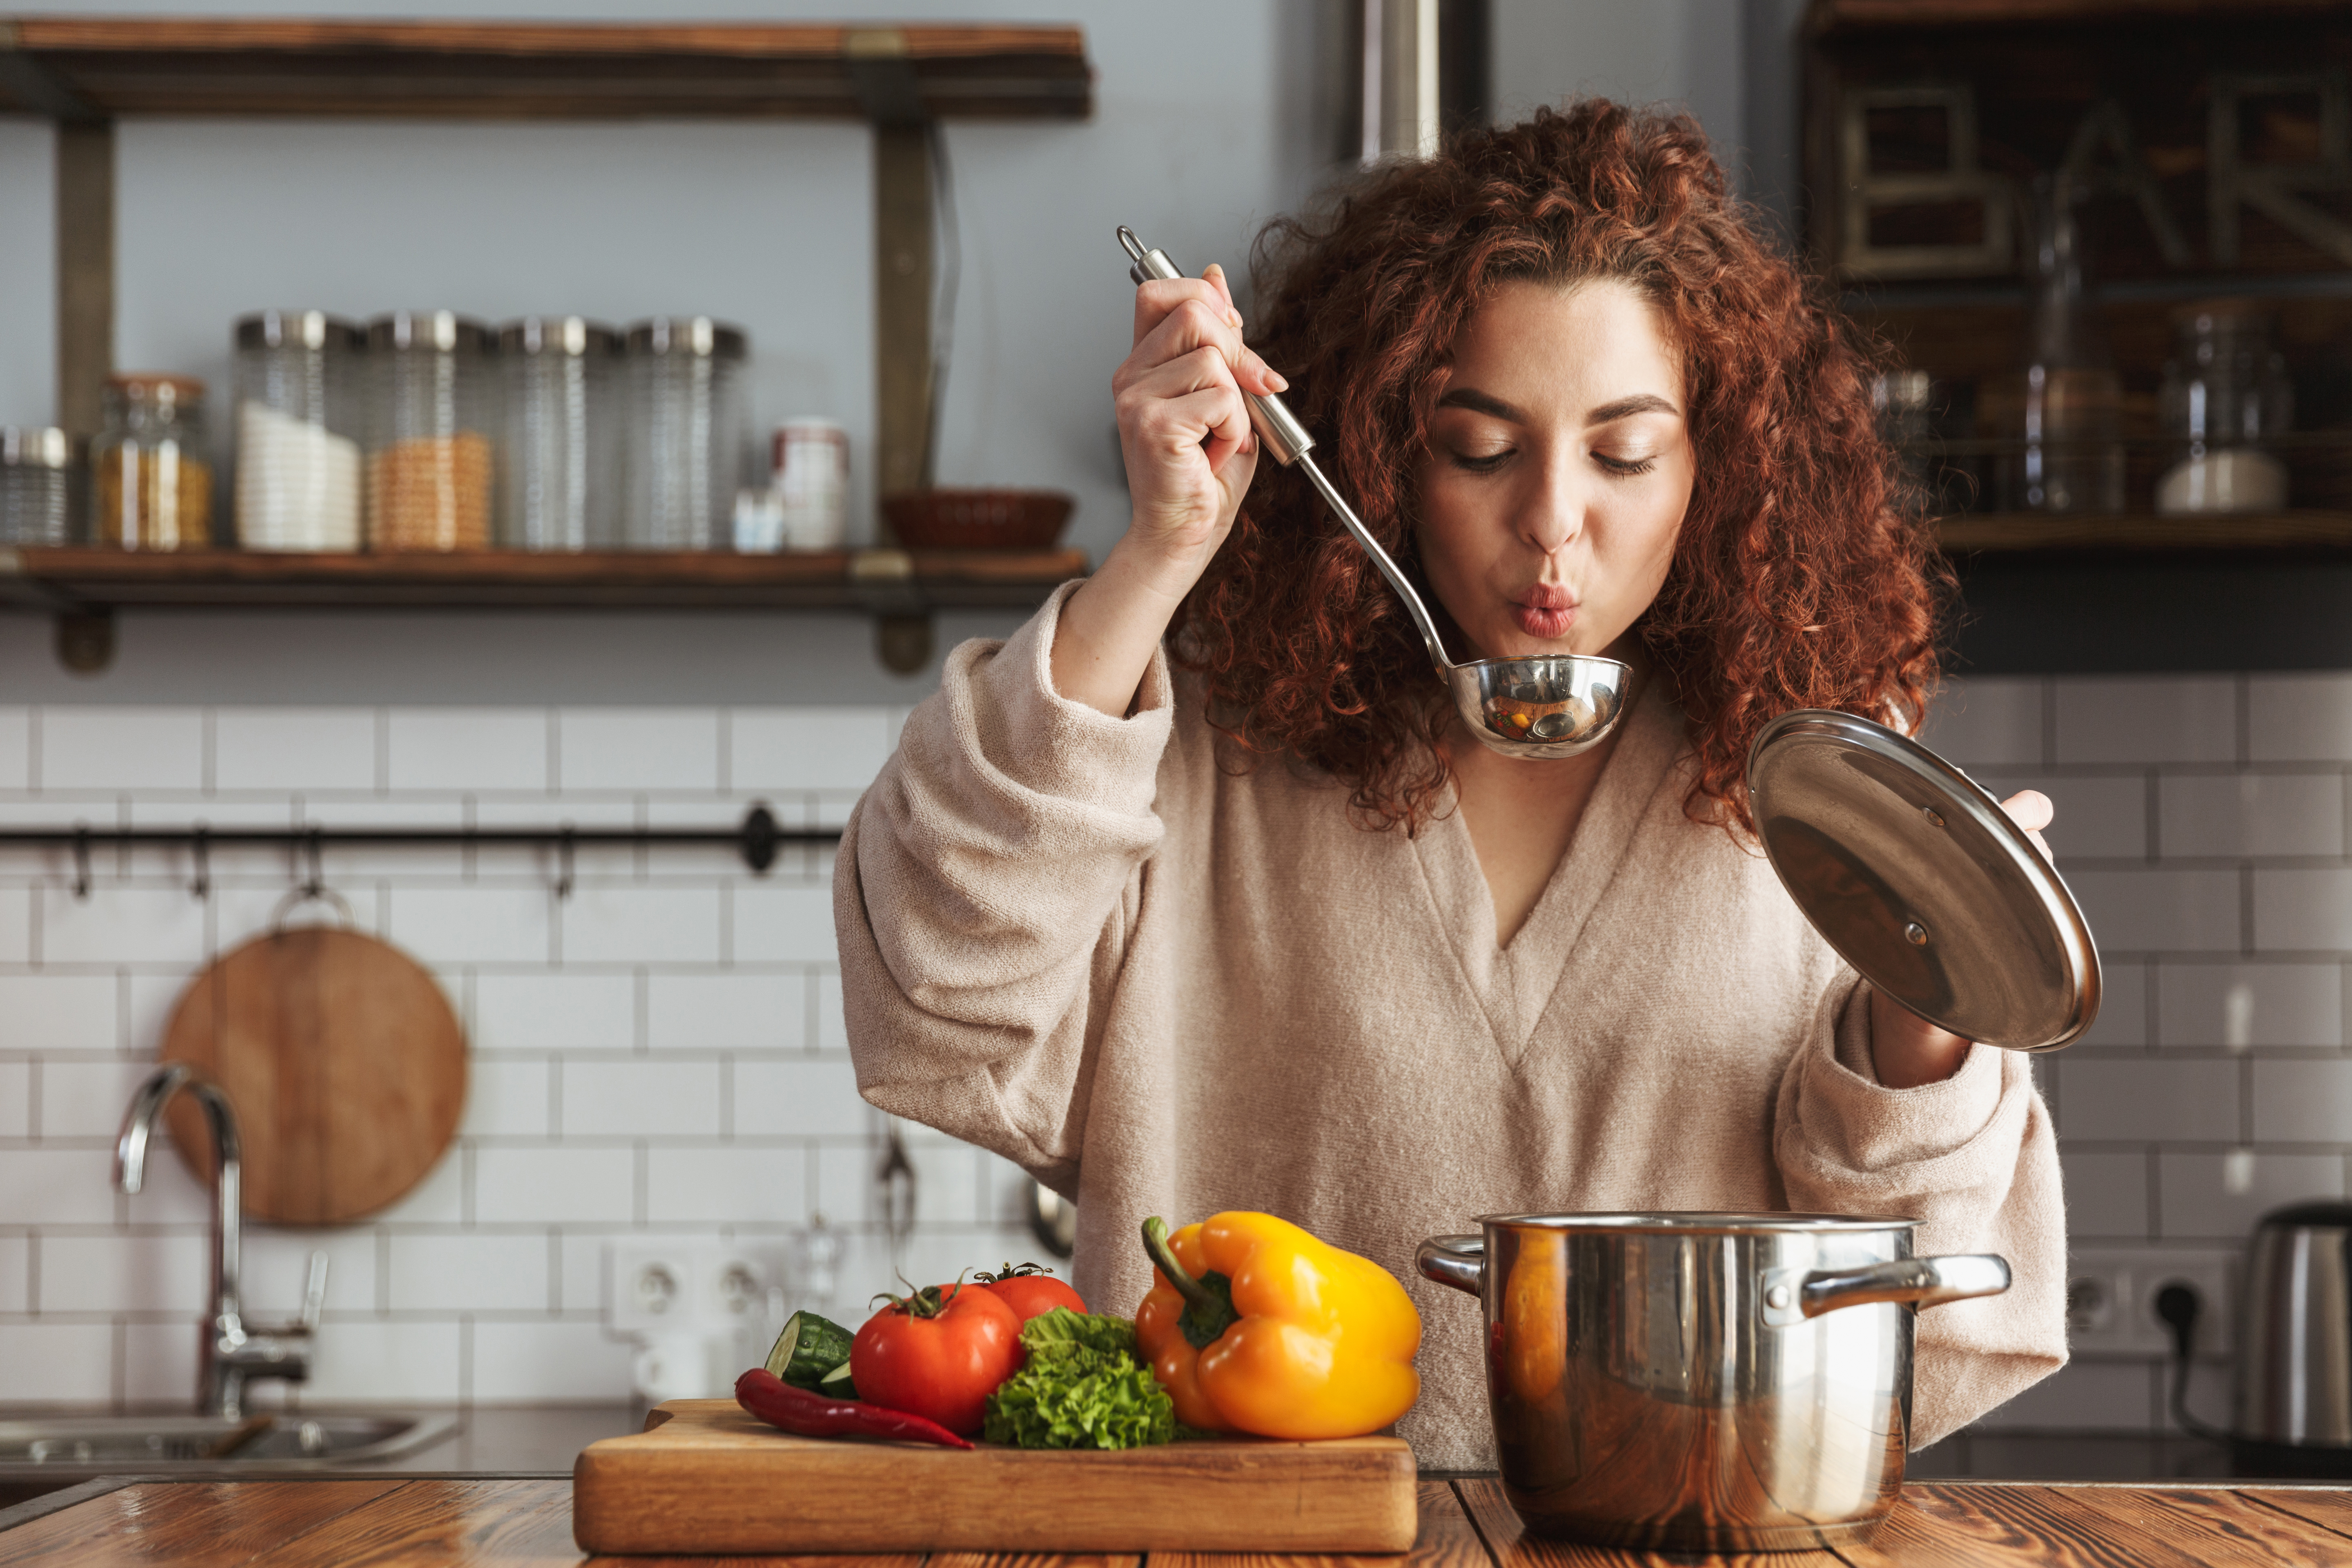 Eine Frau probiert das Essen, das sie gekocht hat | Quelle: Shutterstock